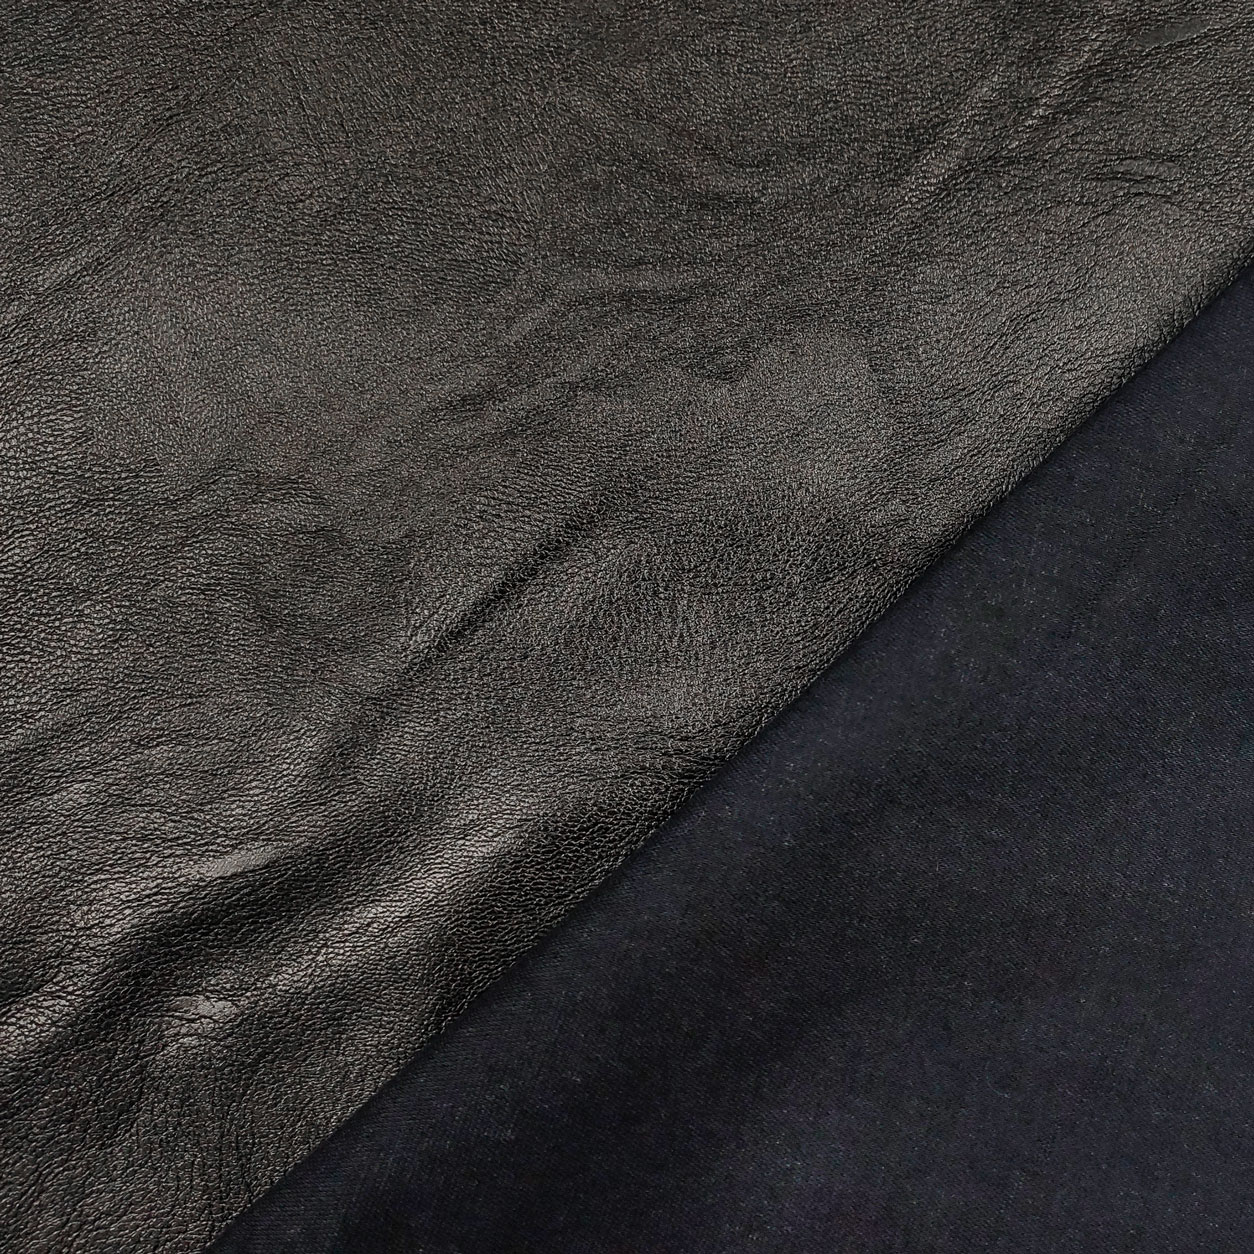 tessuto ecopelle per abbigliamento nero